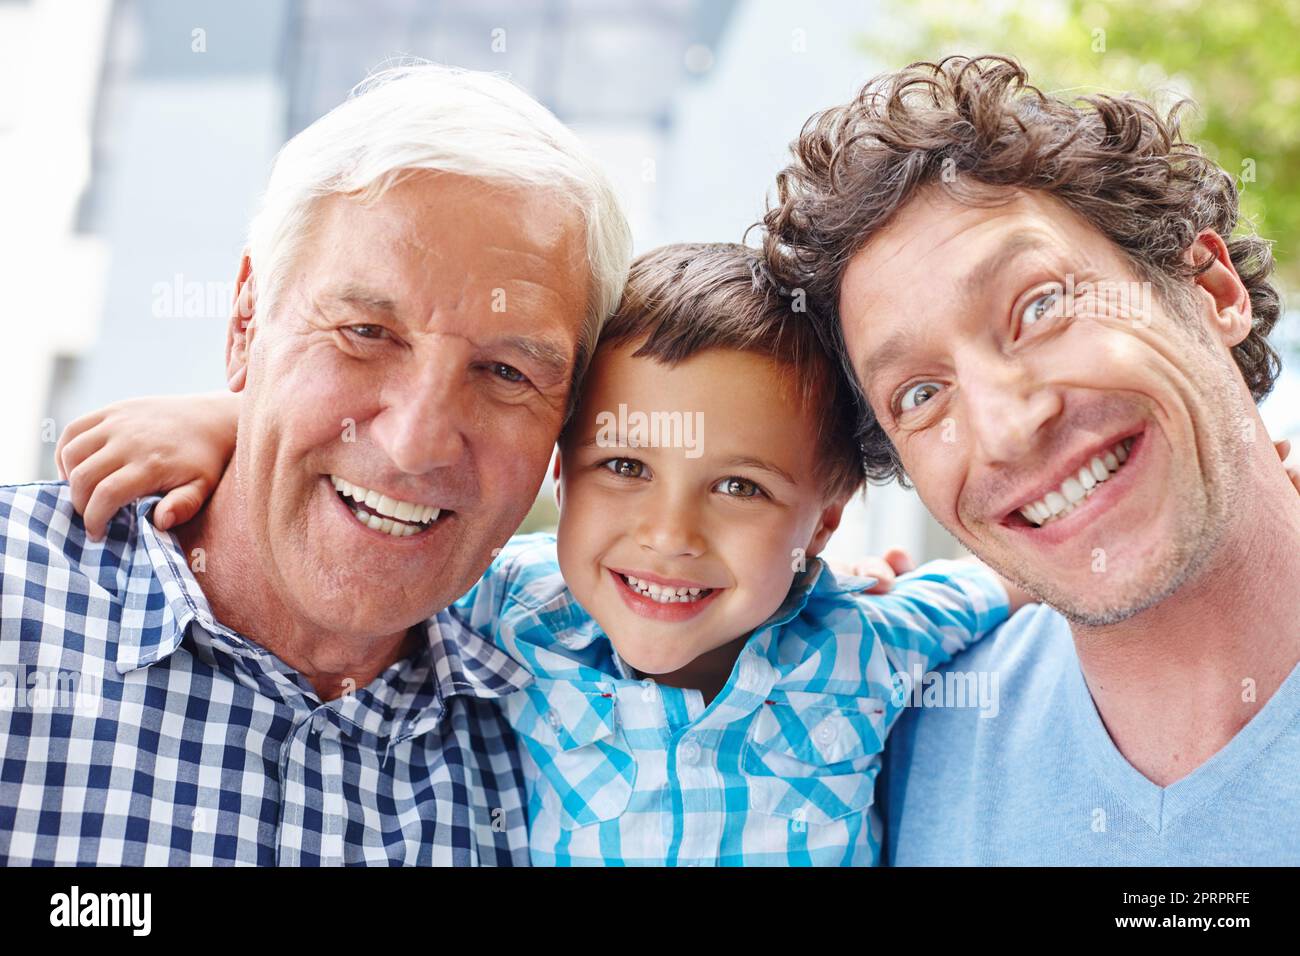 Cette famille sait comment Amuse-toi bien. Portrait d'un petit garçon avec son père et son grand-père Banque D'Images